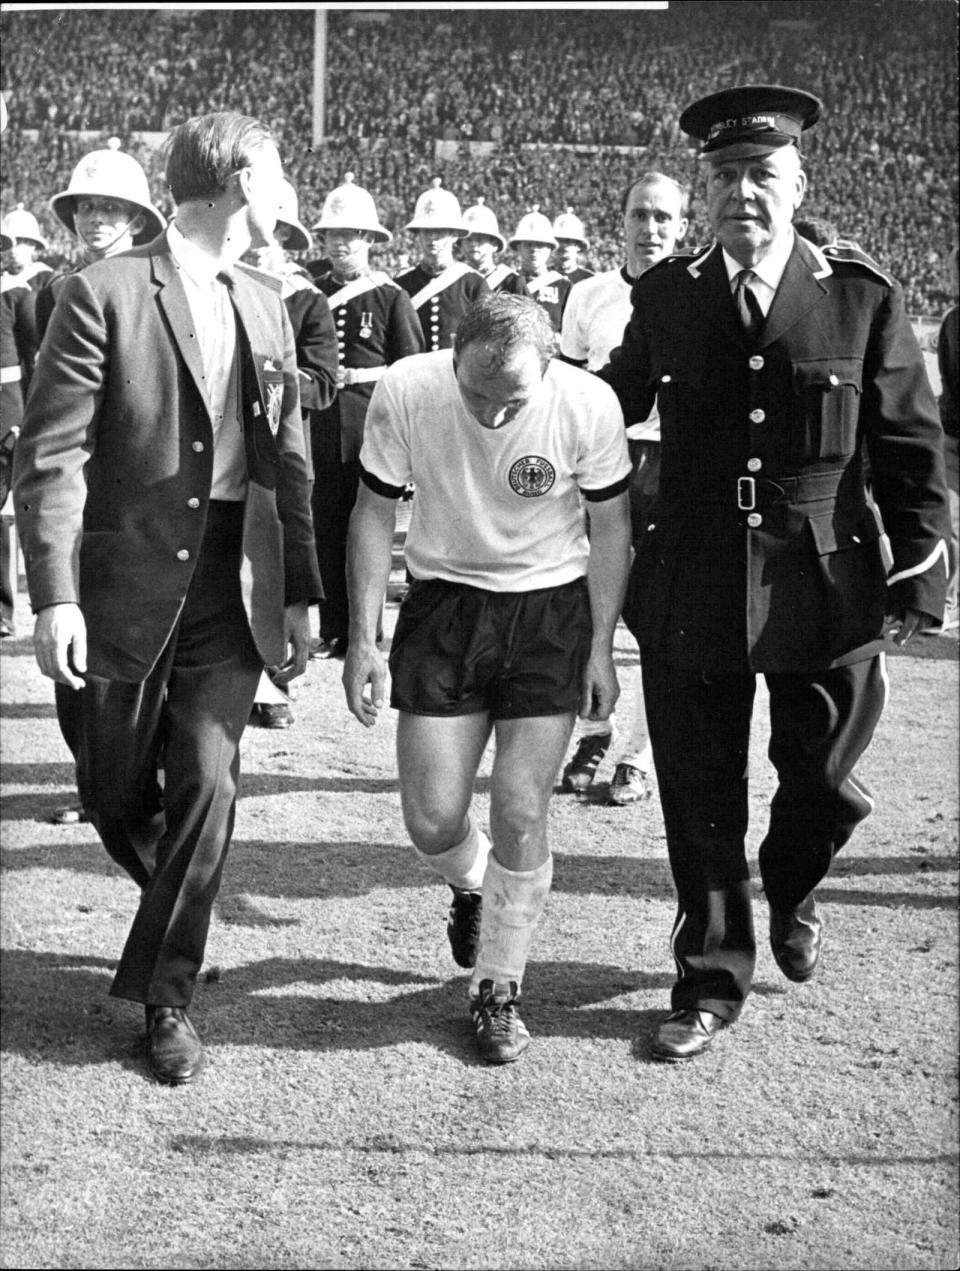 Ein sichtlich gezeichneter Uwe Seeler wird nach dem gegen Gastgeber England verlorenen WM-Endspiel 1966 vom Platz geleitet. (Bild: BROADVIEW /picurealliance)